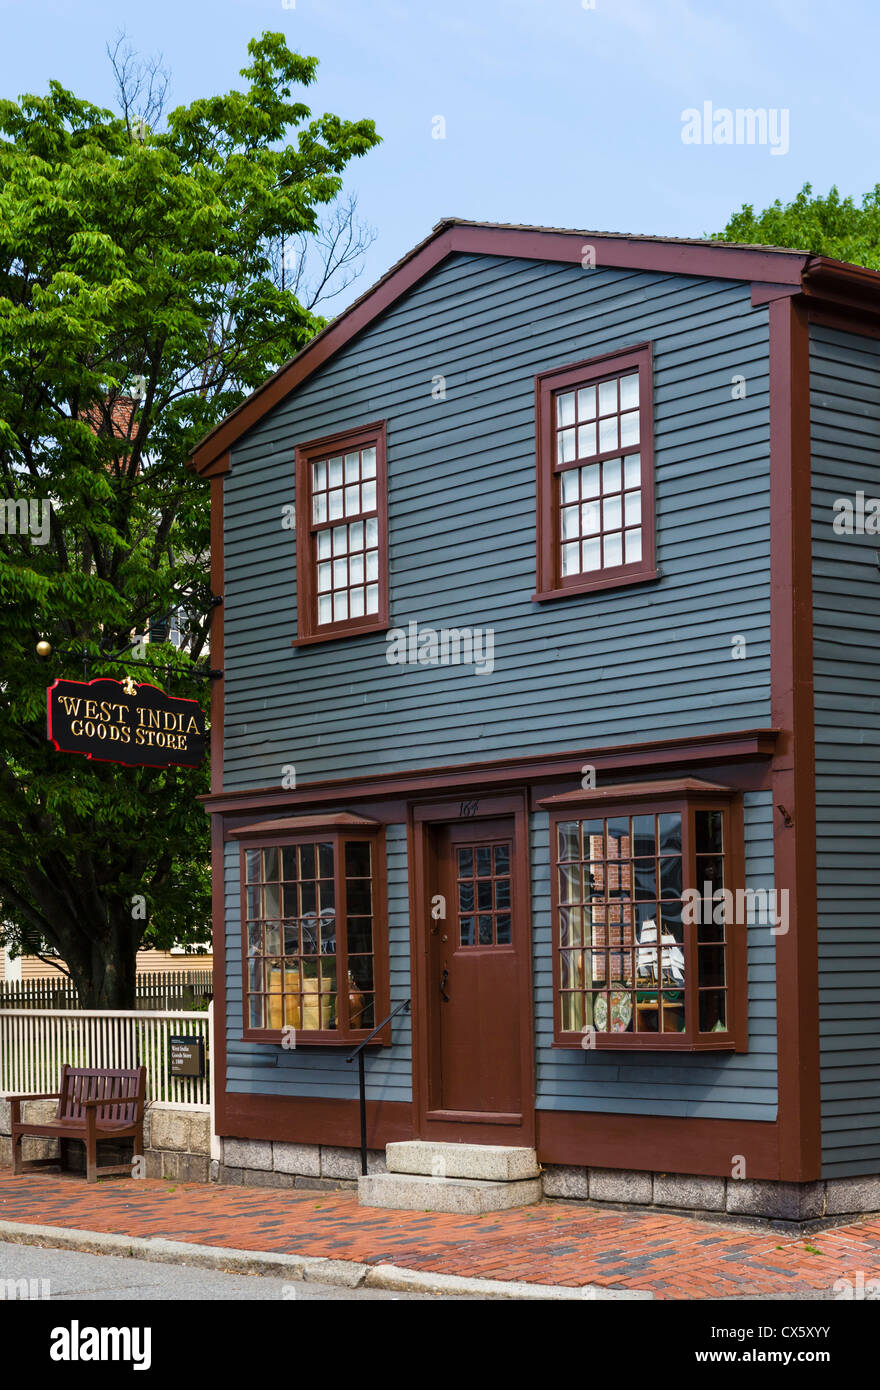 Le magasin d'articles de l'ouest de l'Inde, un bâtiment historique de la rue Derby, Salem, Massachusetts, USA Banque D'Images